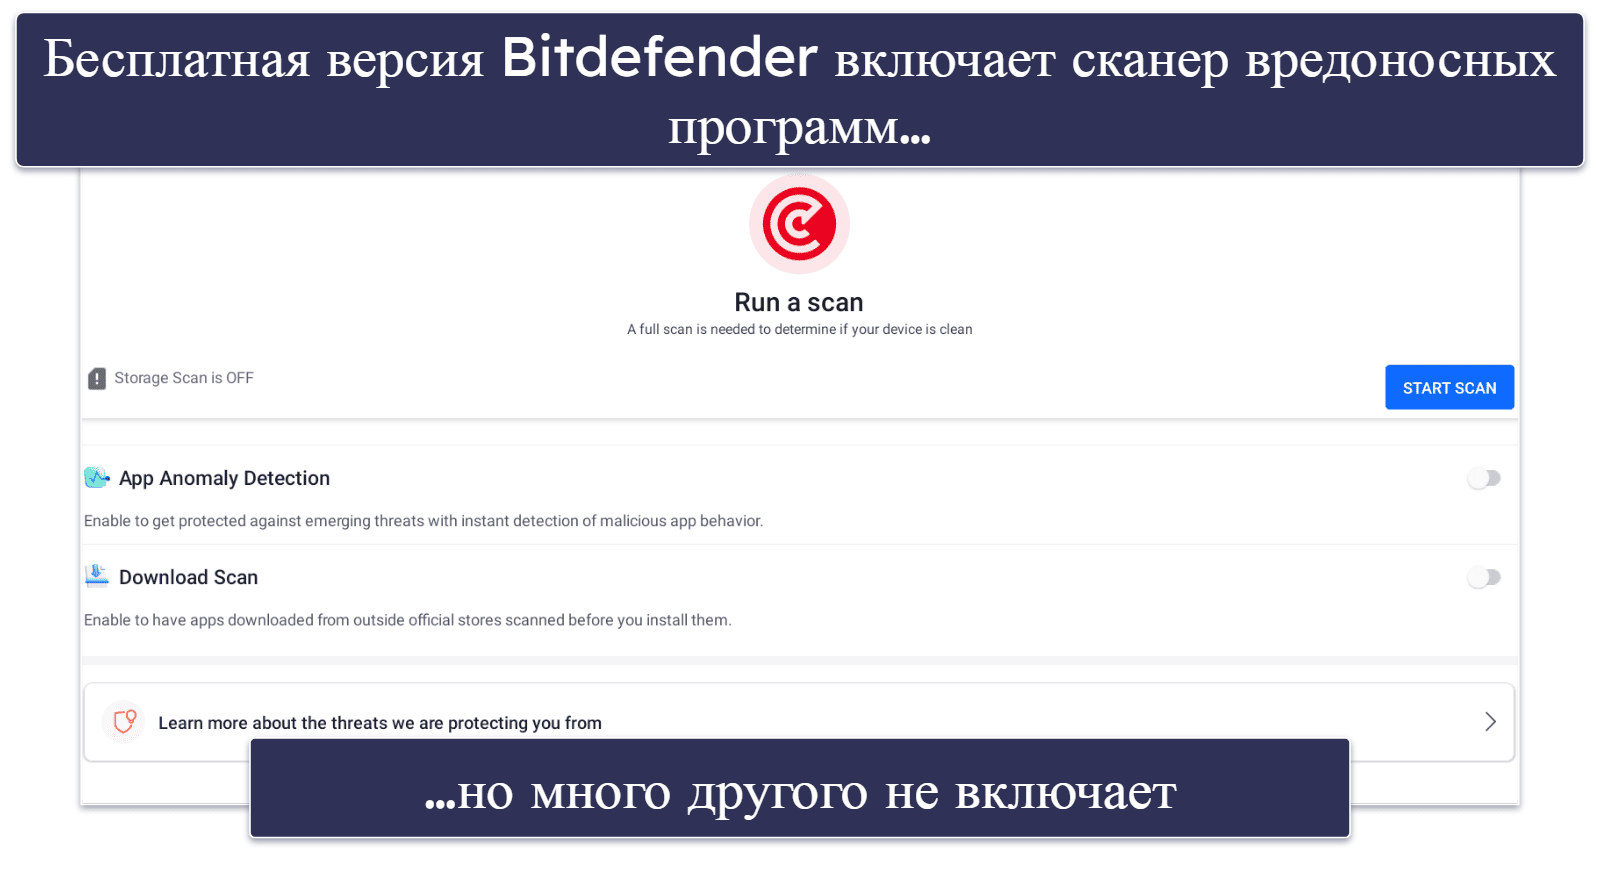 Лучший бесплатный антивирус для Chromebook — Bitdefender